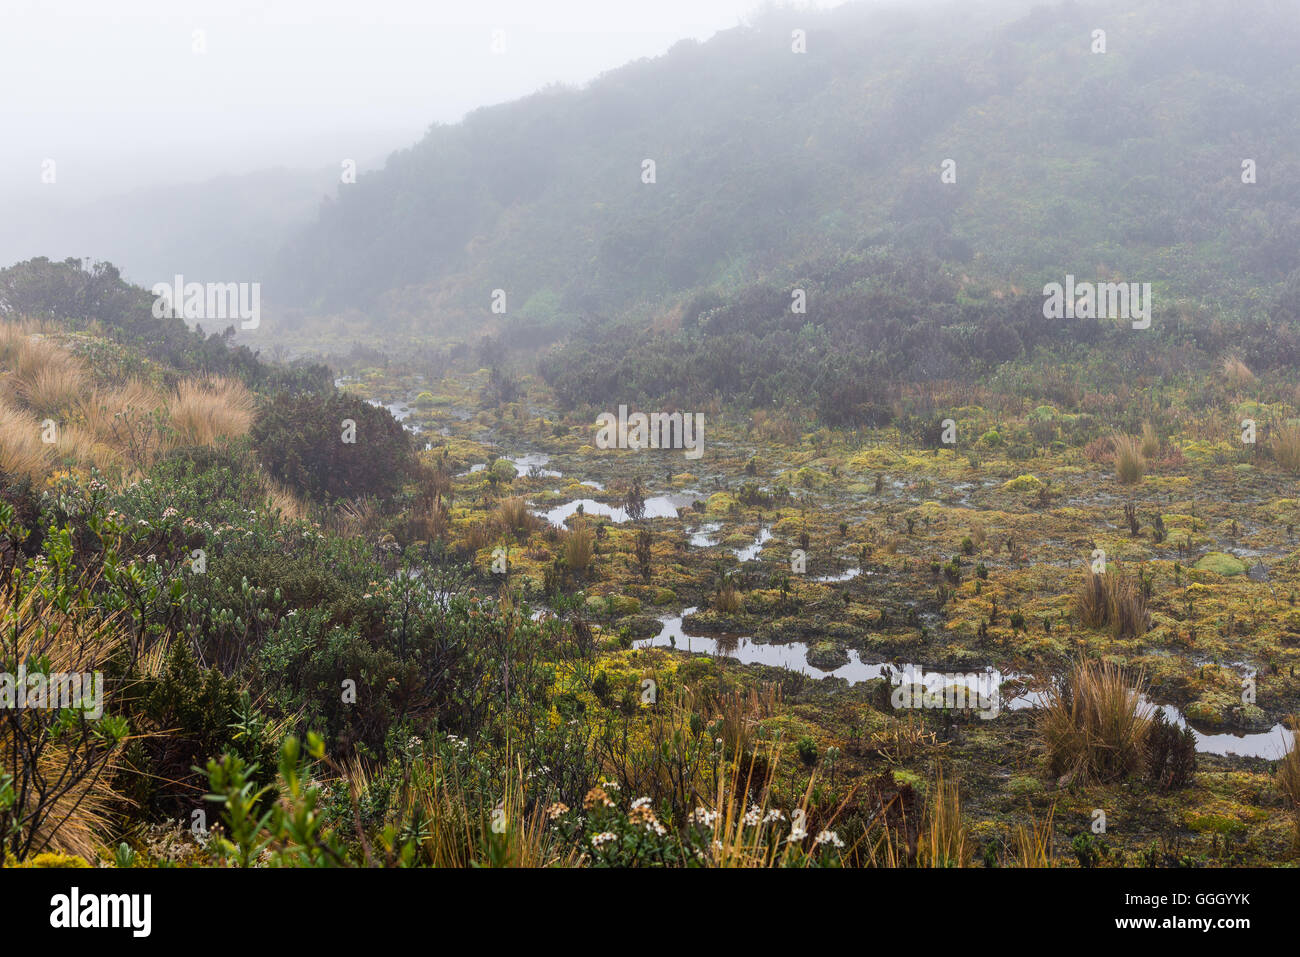 Colorida vegetación de páramo los humedales en la alta cordillera de Los Andes. Reserva Ecológica Cayambe Coca. Ecuador, América del Sur. Foto de stock